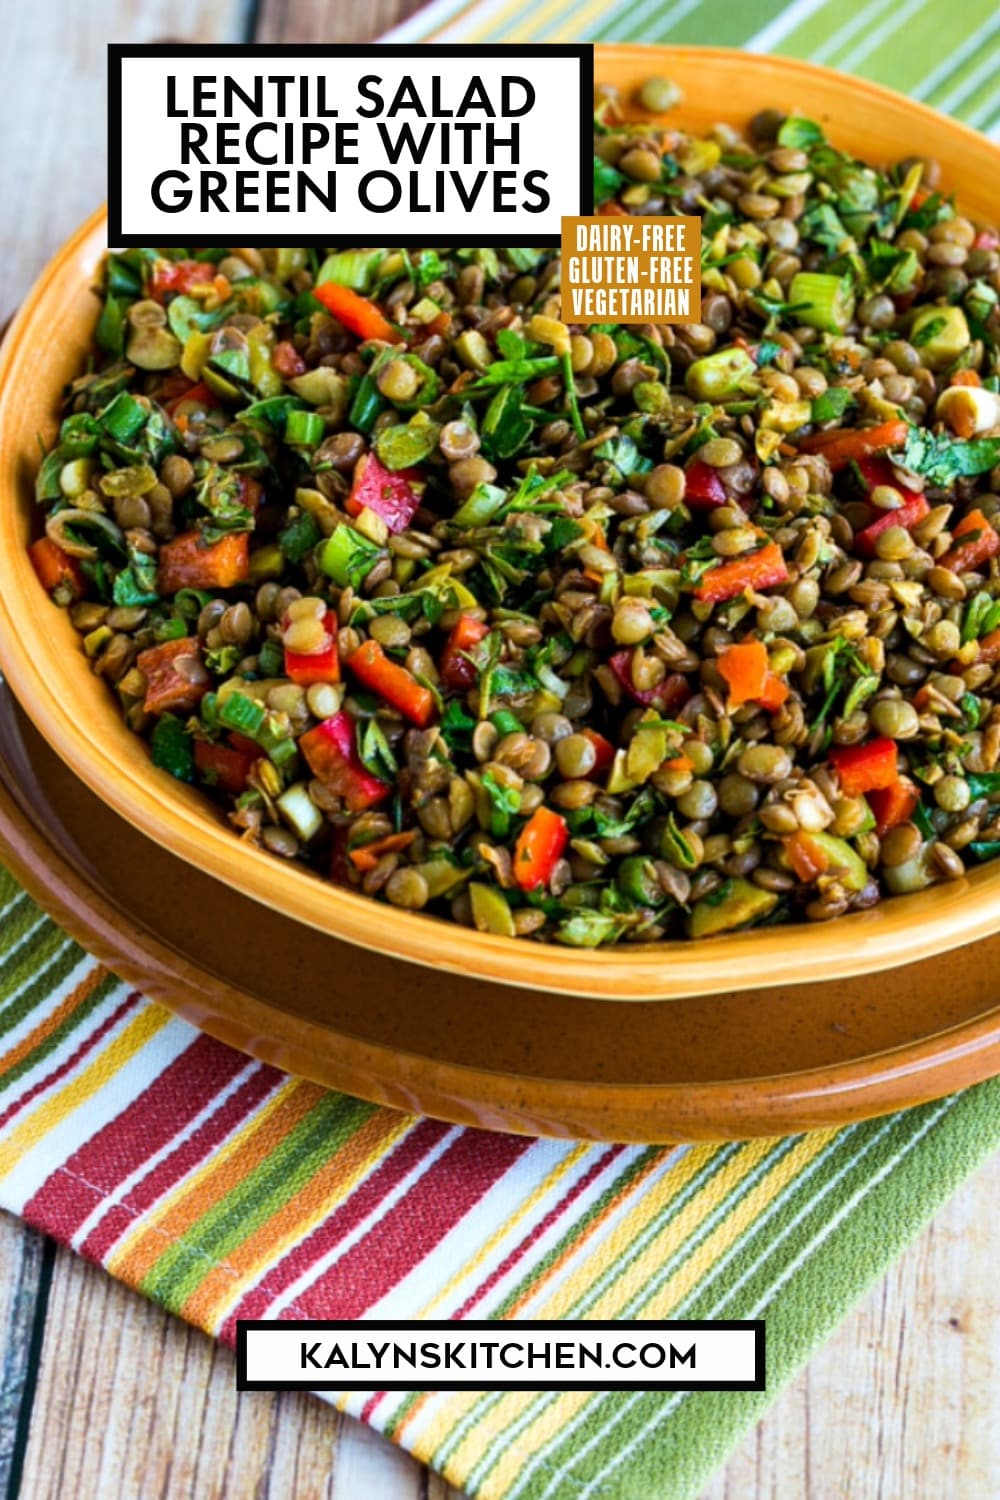 Pinterest image of Lentil Salad Recipe with Green Olives